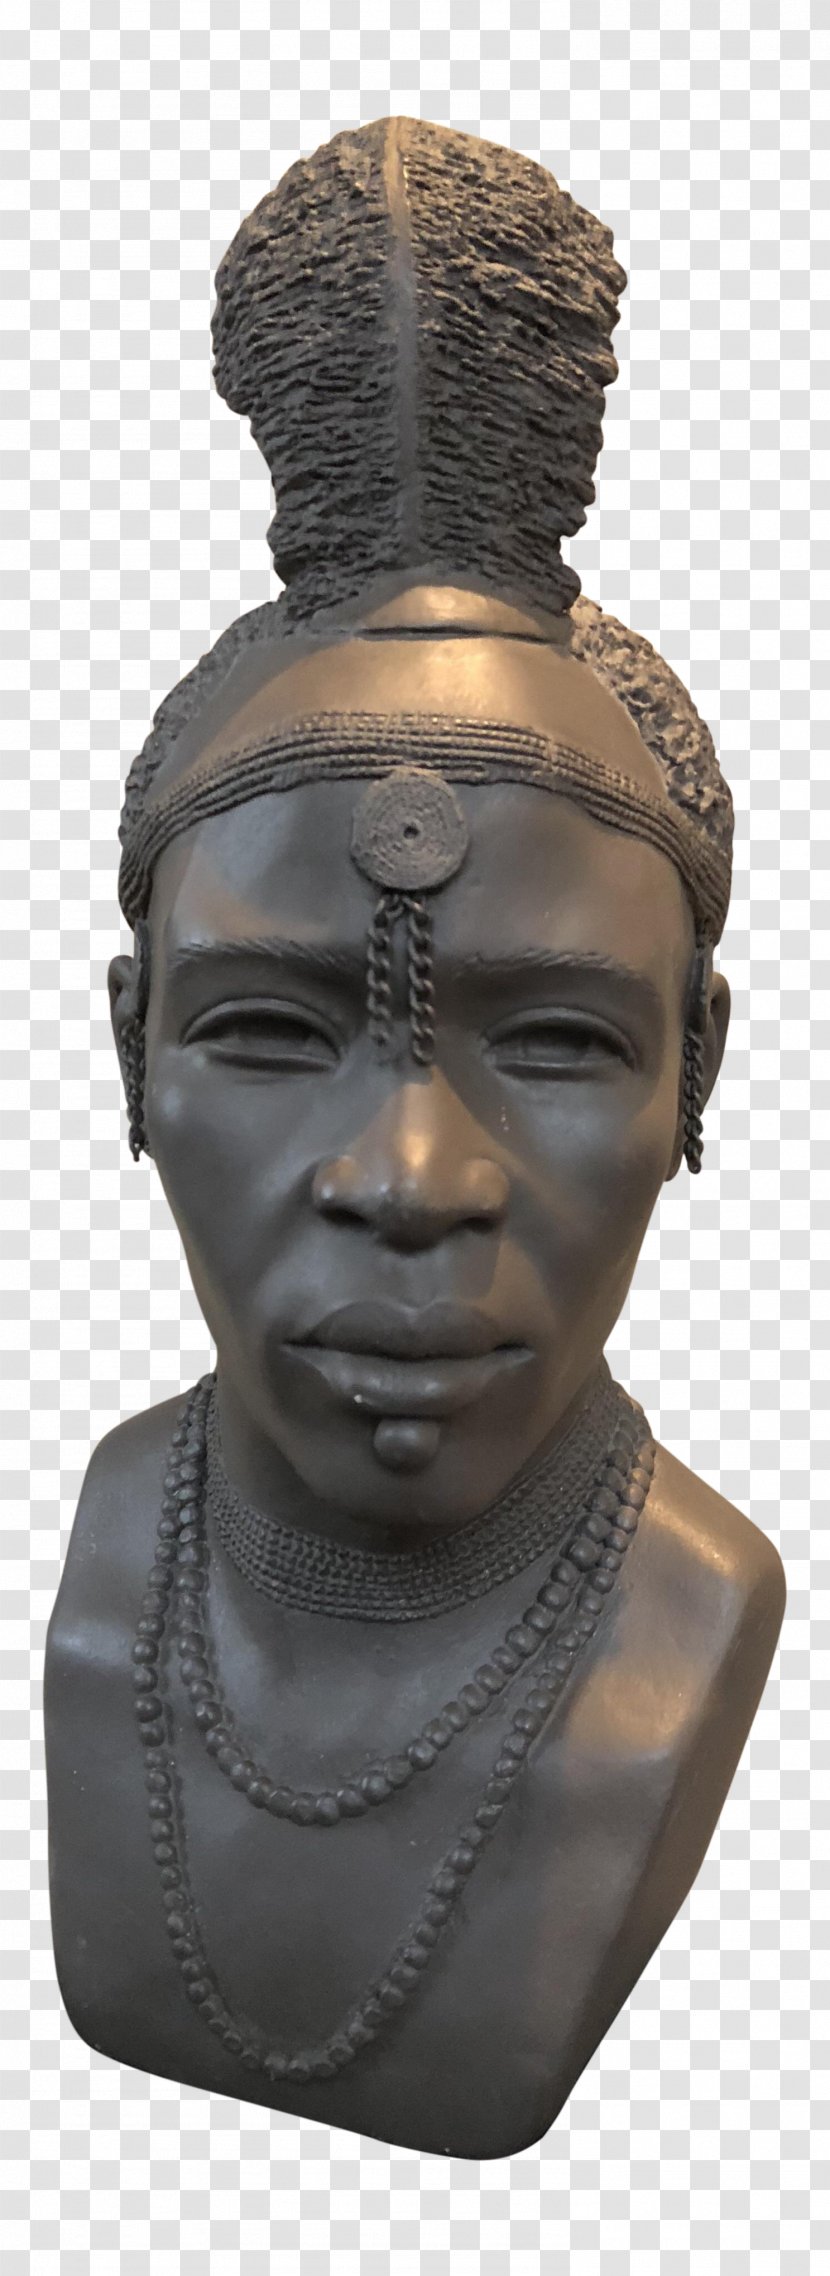 Woman Face - Head - Artifact Nonbuilding Structure Transparent PNG